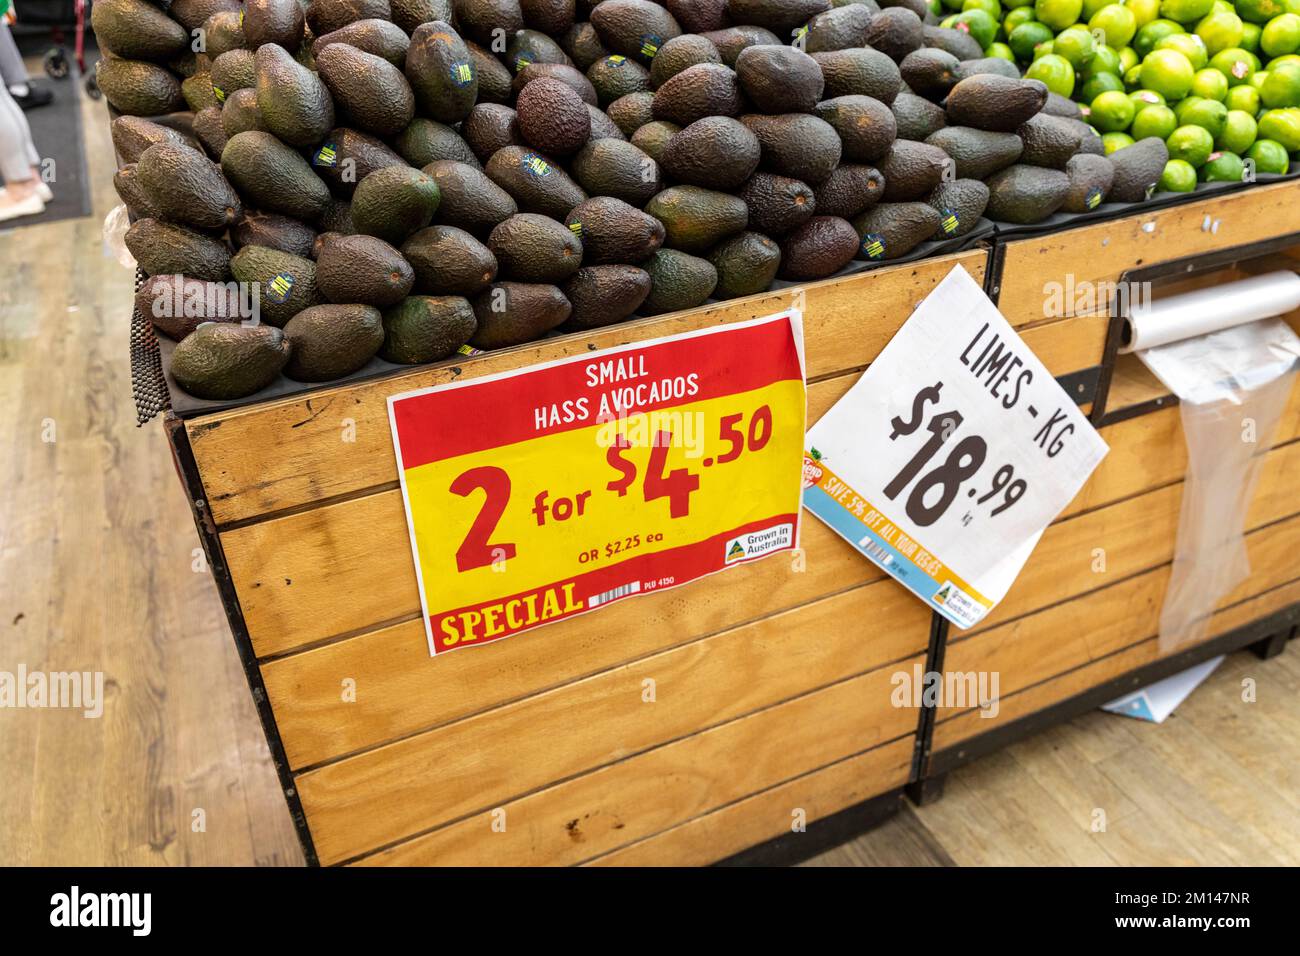 Kleine hass-Avocados und frische grüne Limetten zum Verkauf in einem Supermarkt in Sydney, NSW, Australien. Obst wird ausgestellt Stockfoto